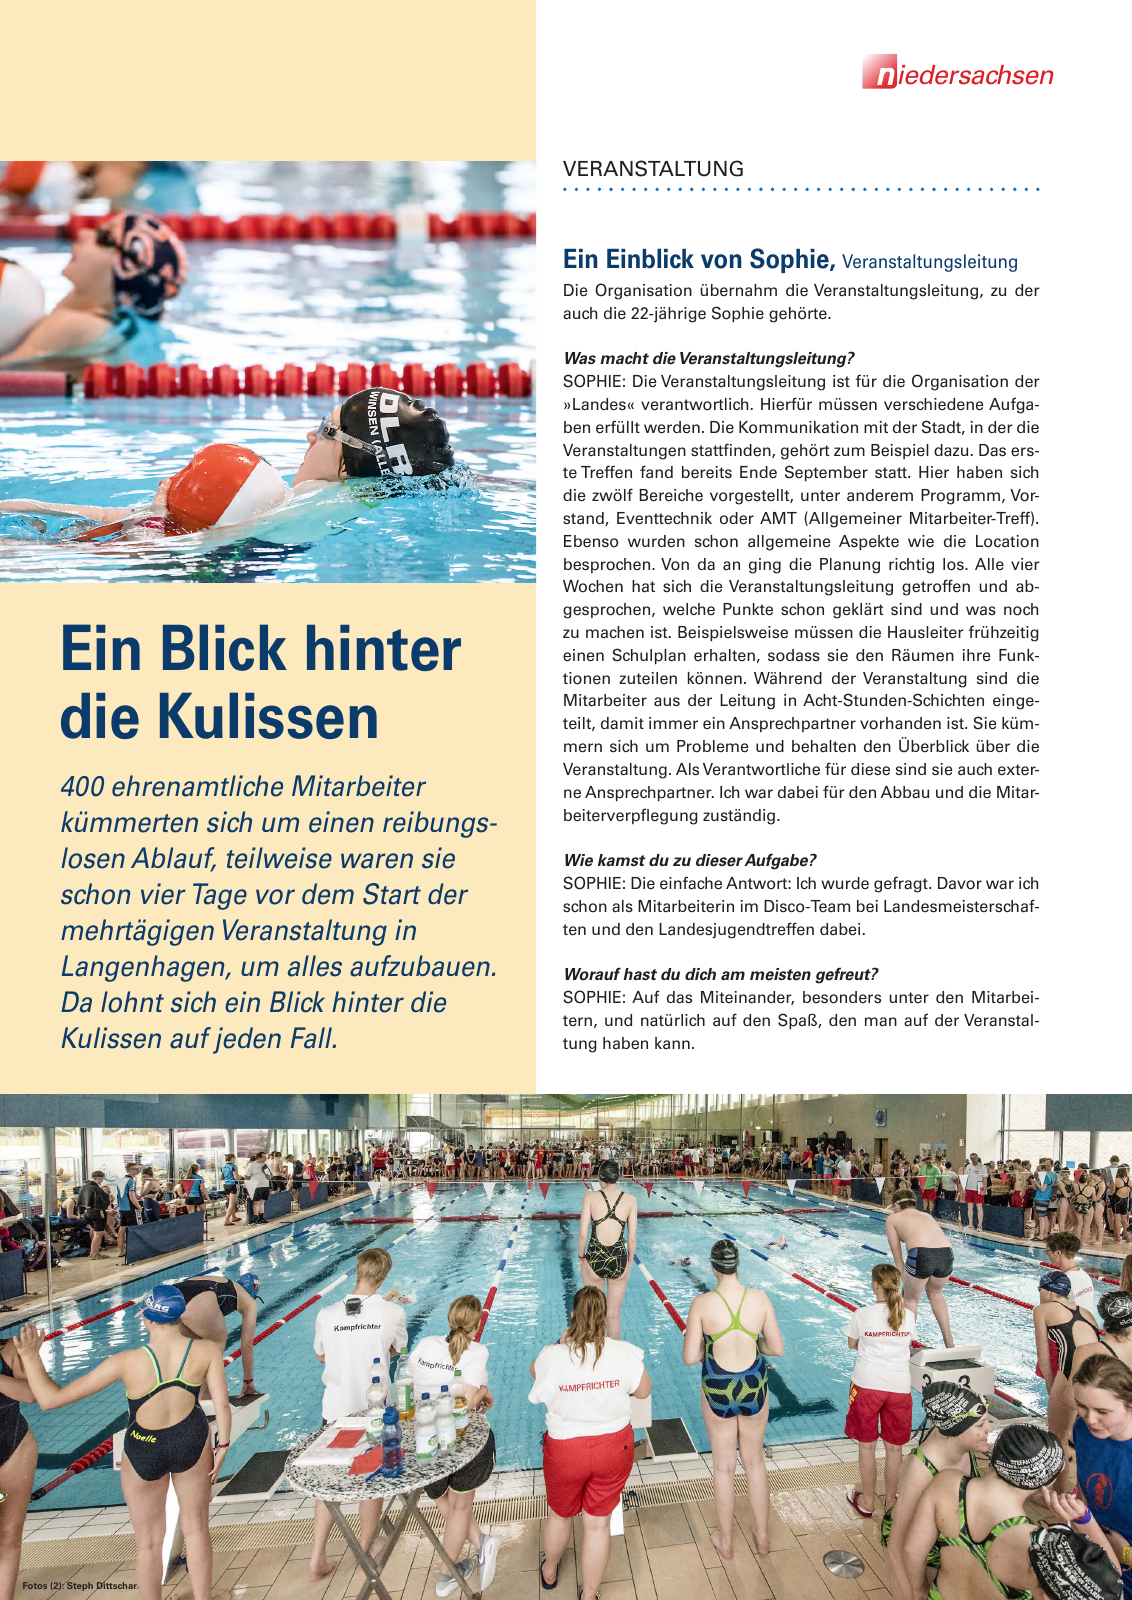 Vorschau Lebensretter 2/2019 - Niedersachsen Regionalausgabe Seite 5